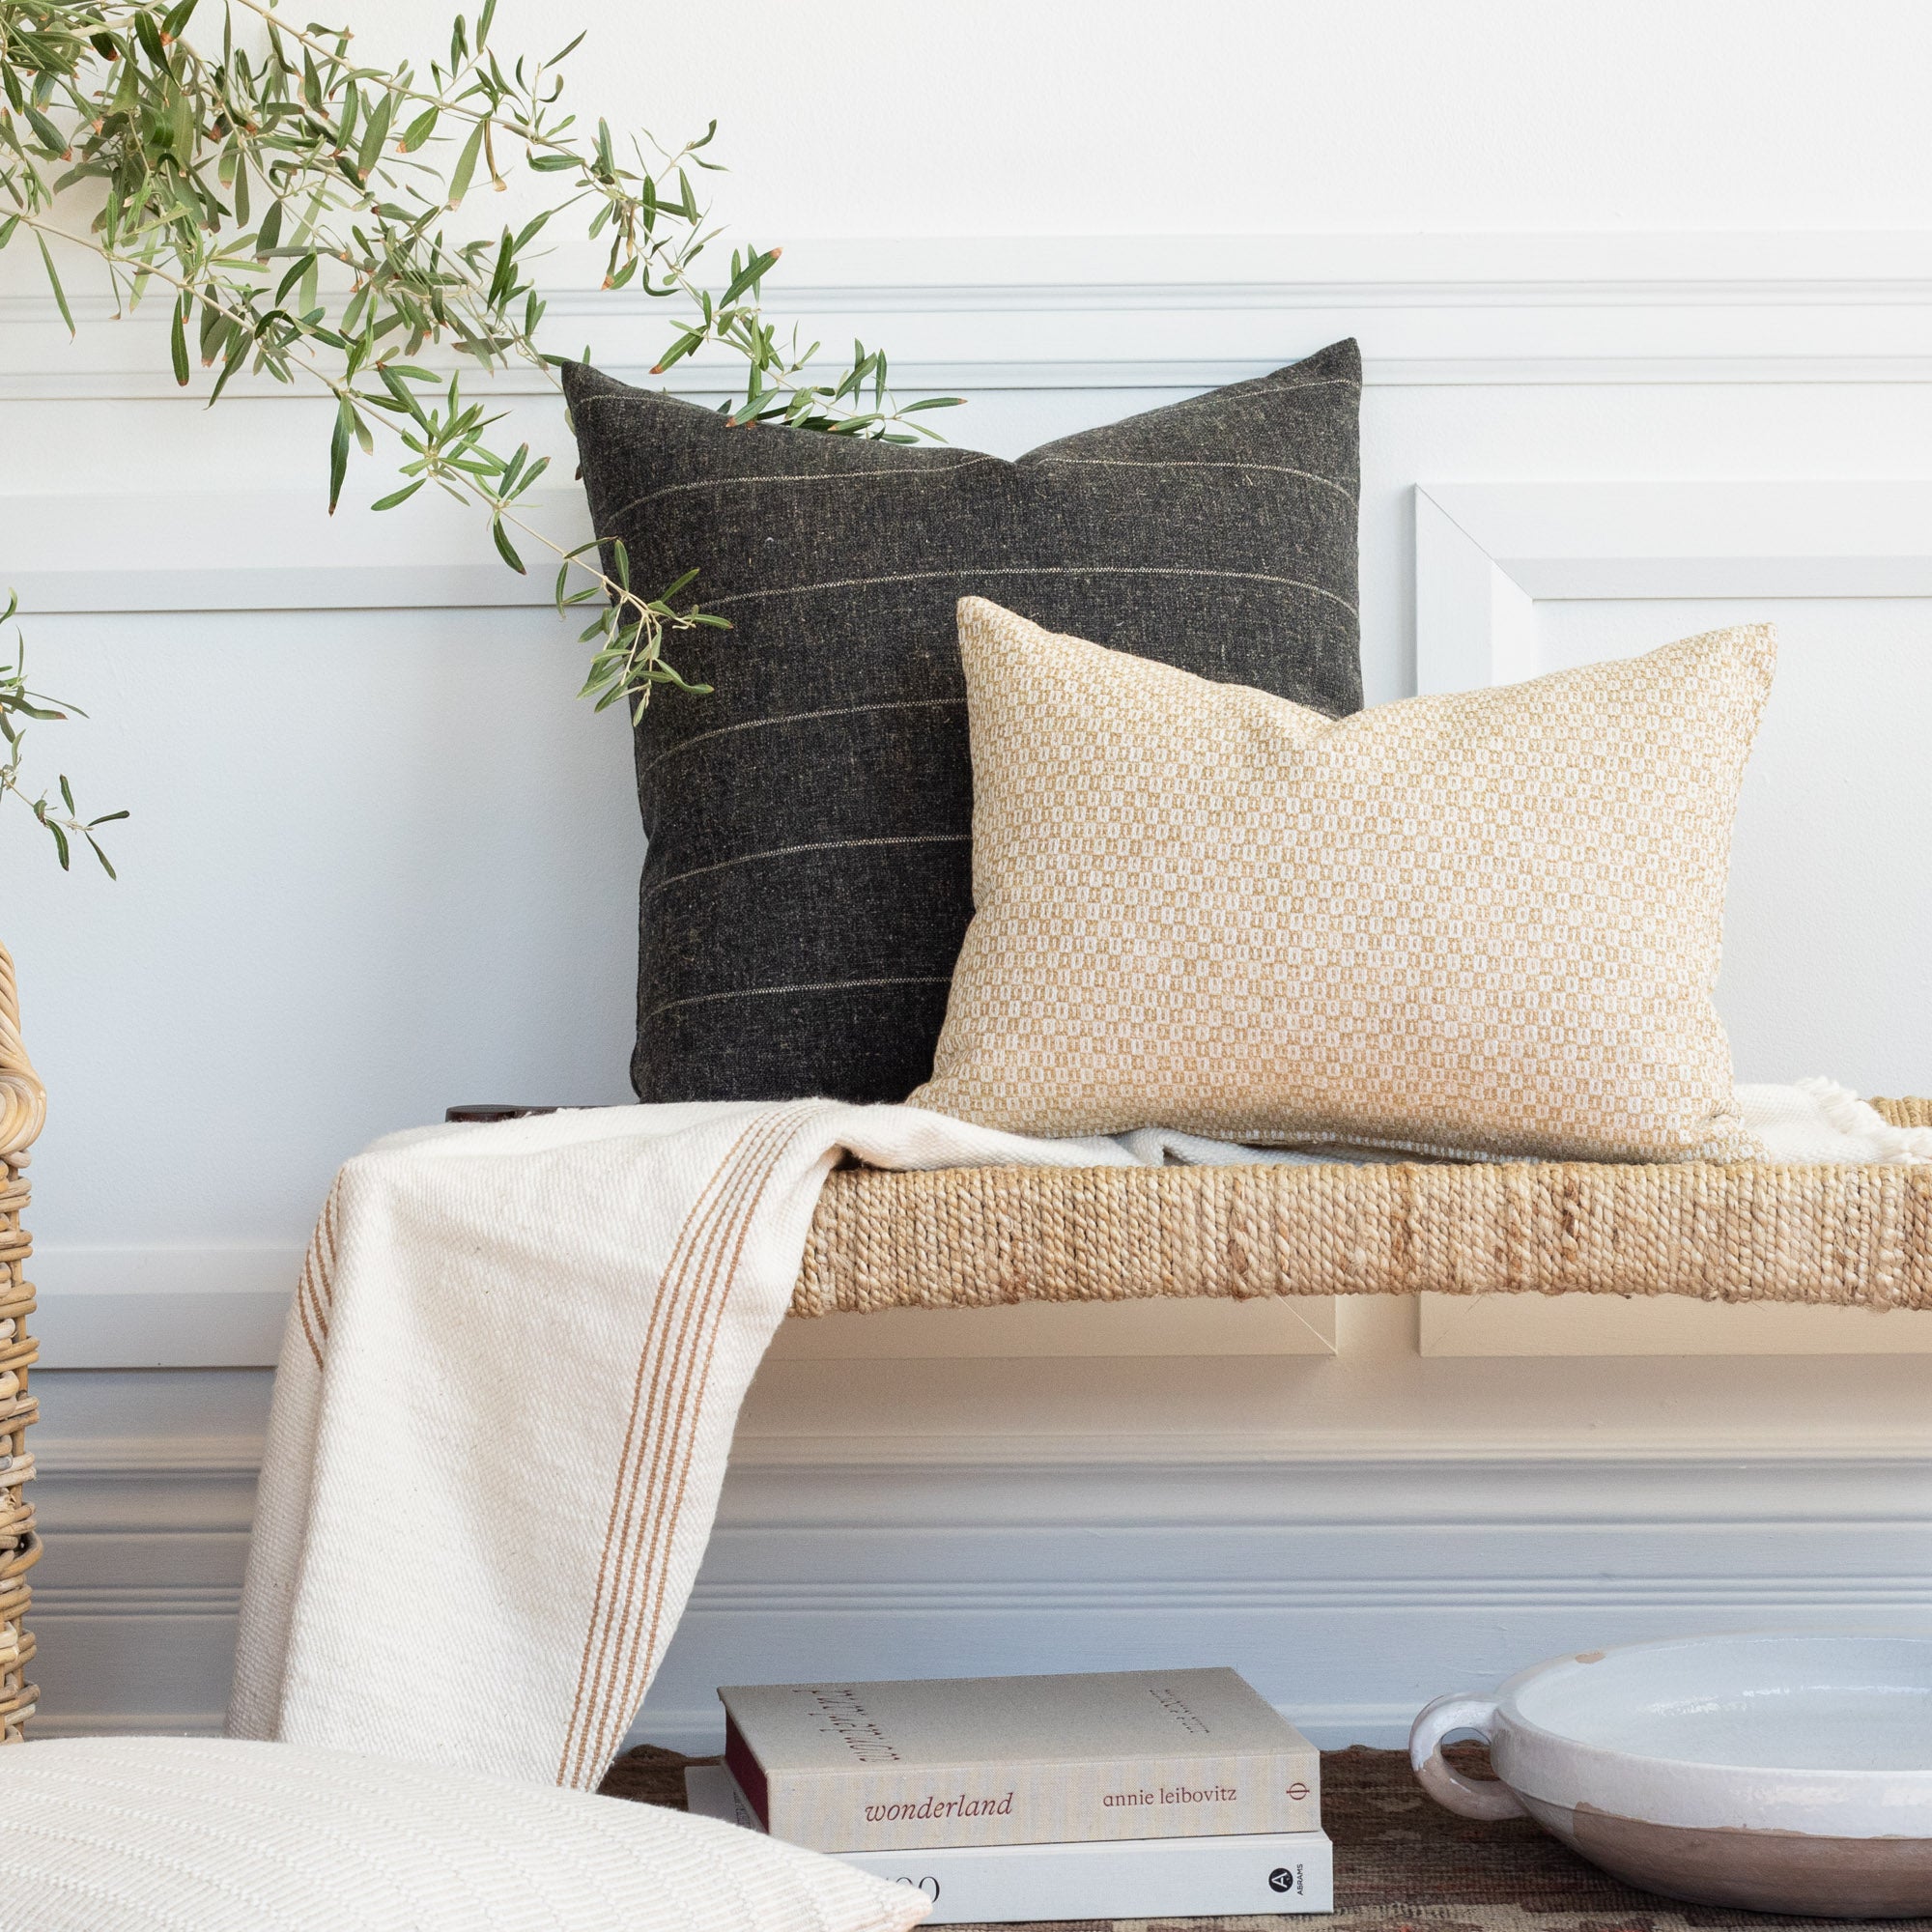 Tonic Living Pillows - Throw Pillows, Decorative Pillows, Lumbar Pillows